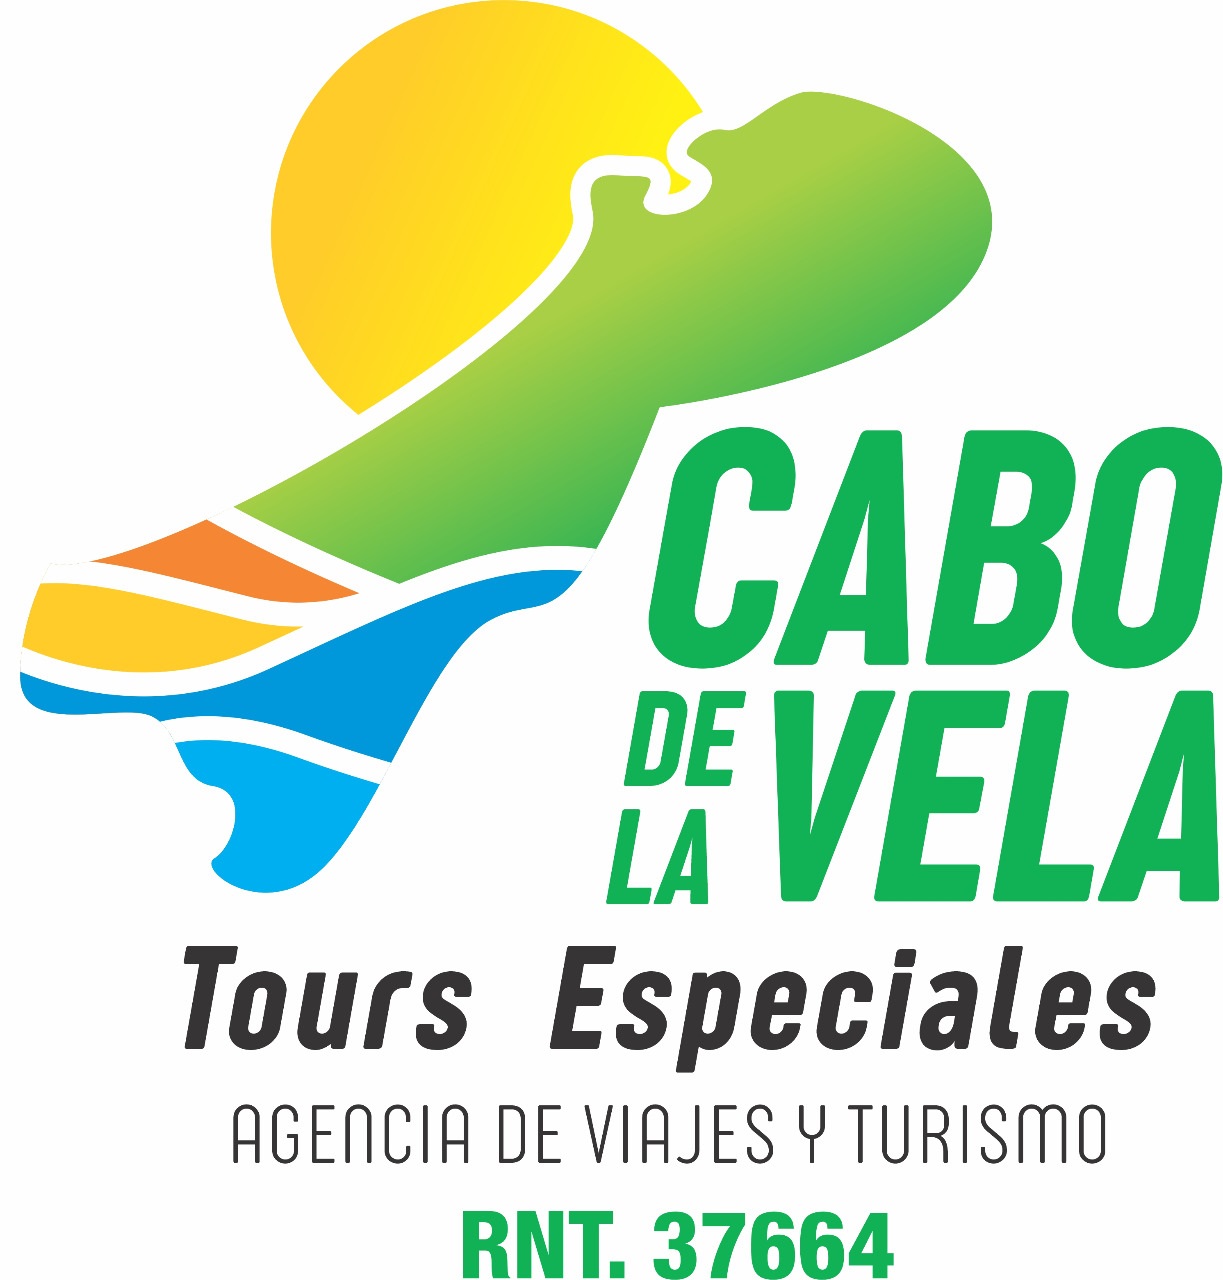 Agencia de viajes de Riohacha, Tours Especiales Cabo de la Vela